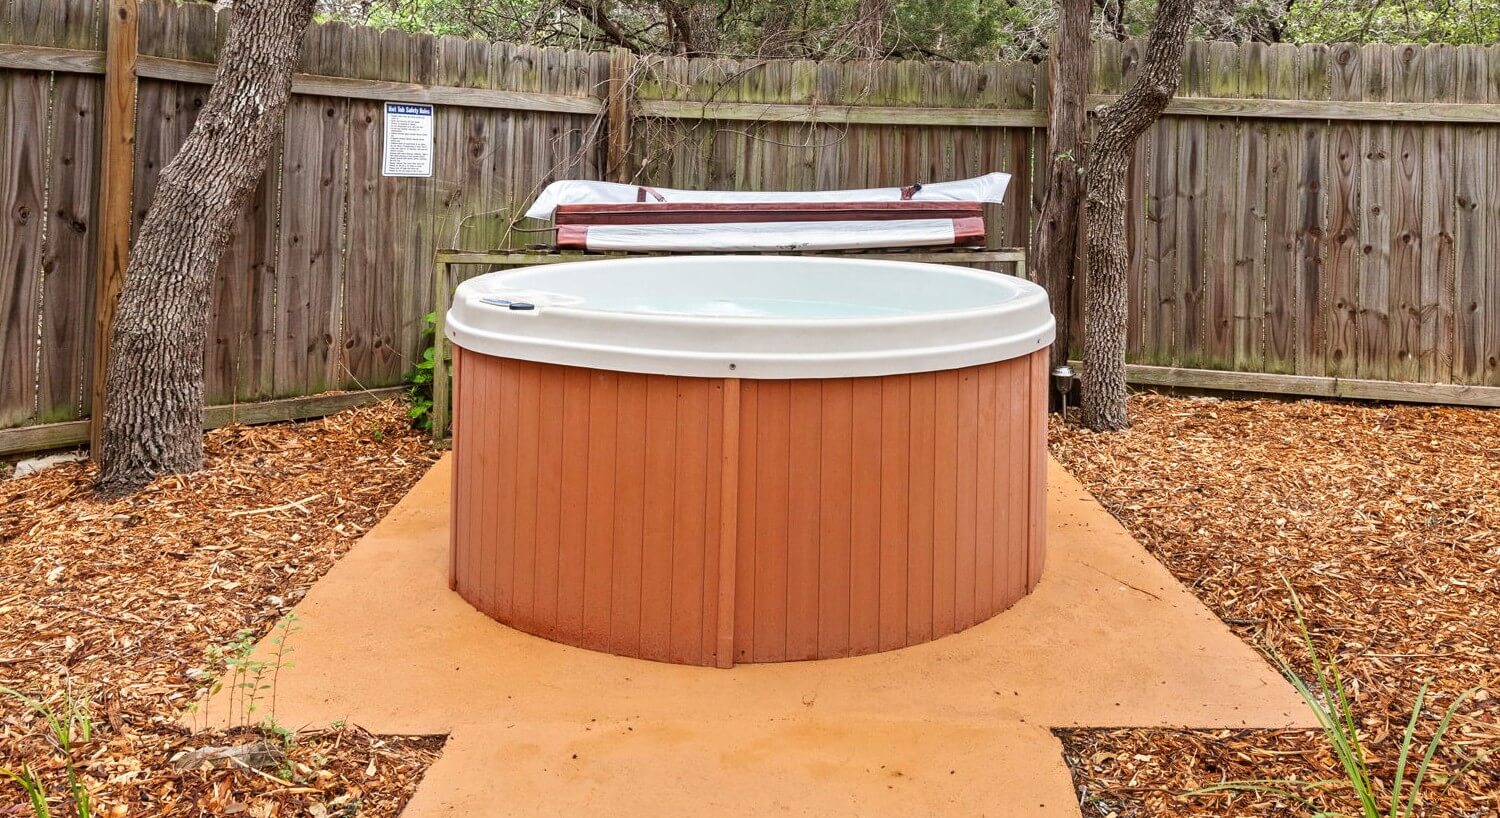 Hot tub in a fenced garden.